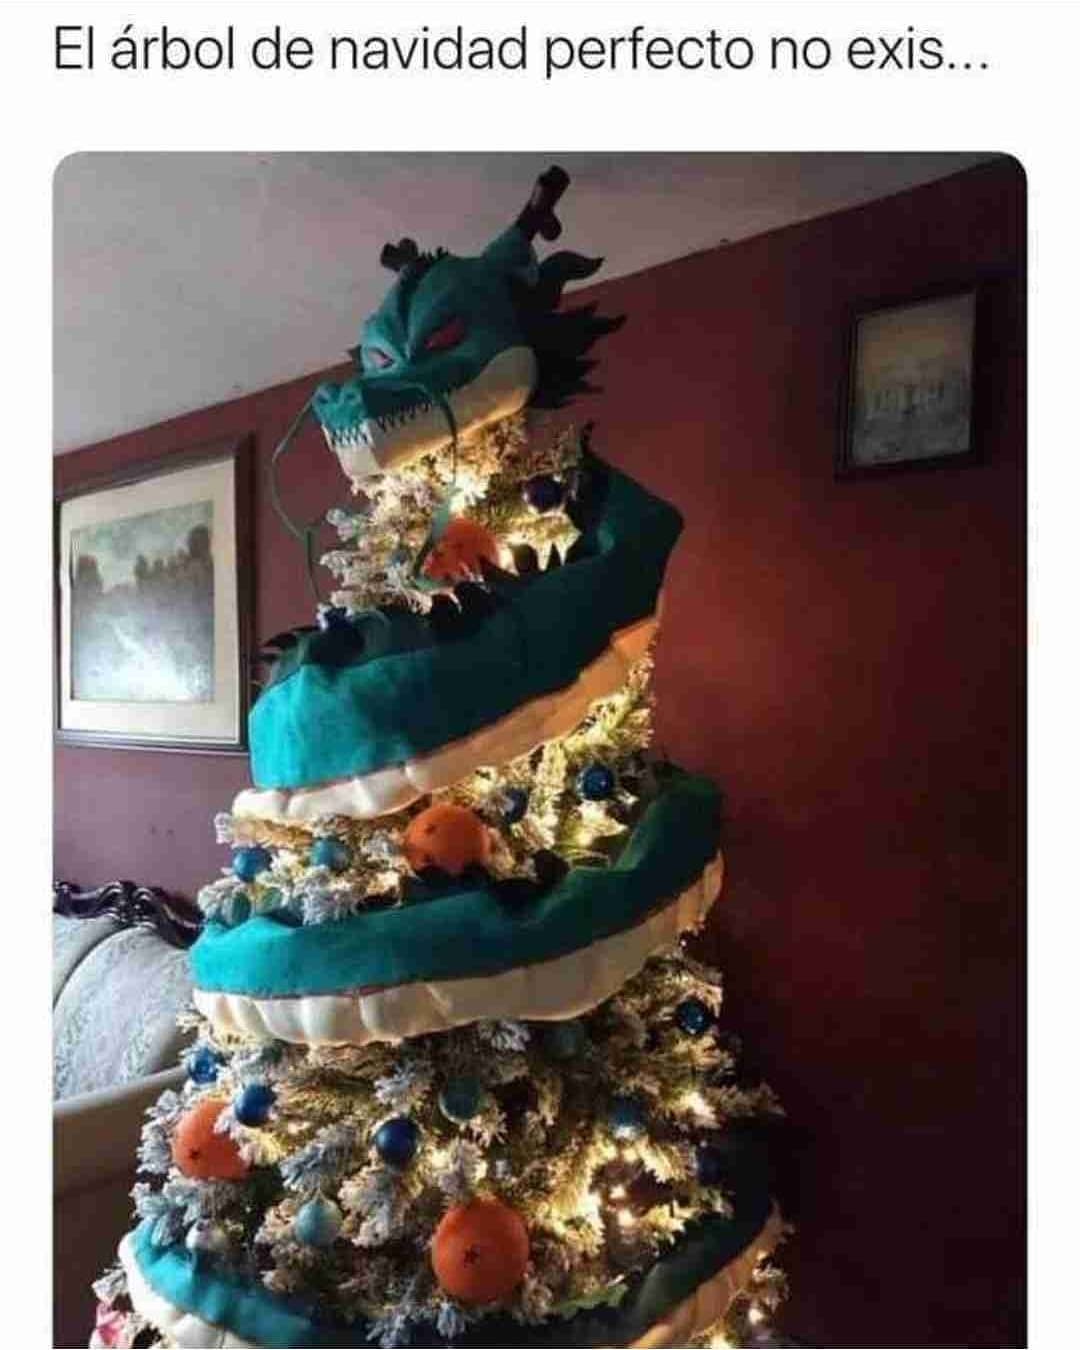 El árbol de navidad perfecto no exis...